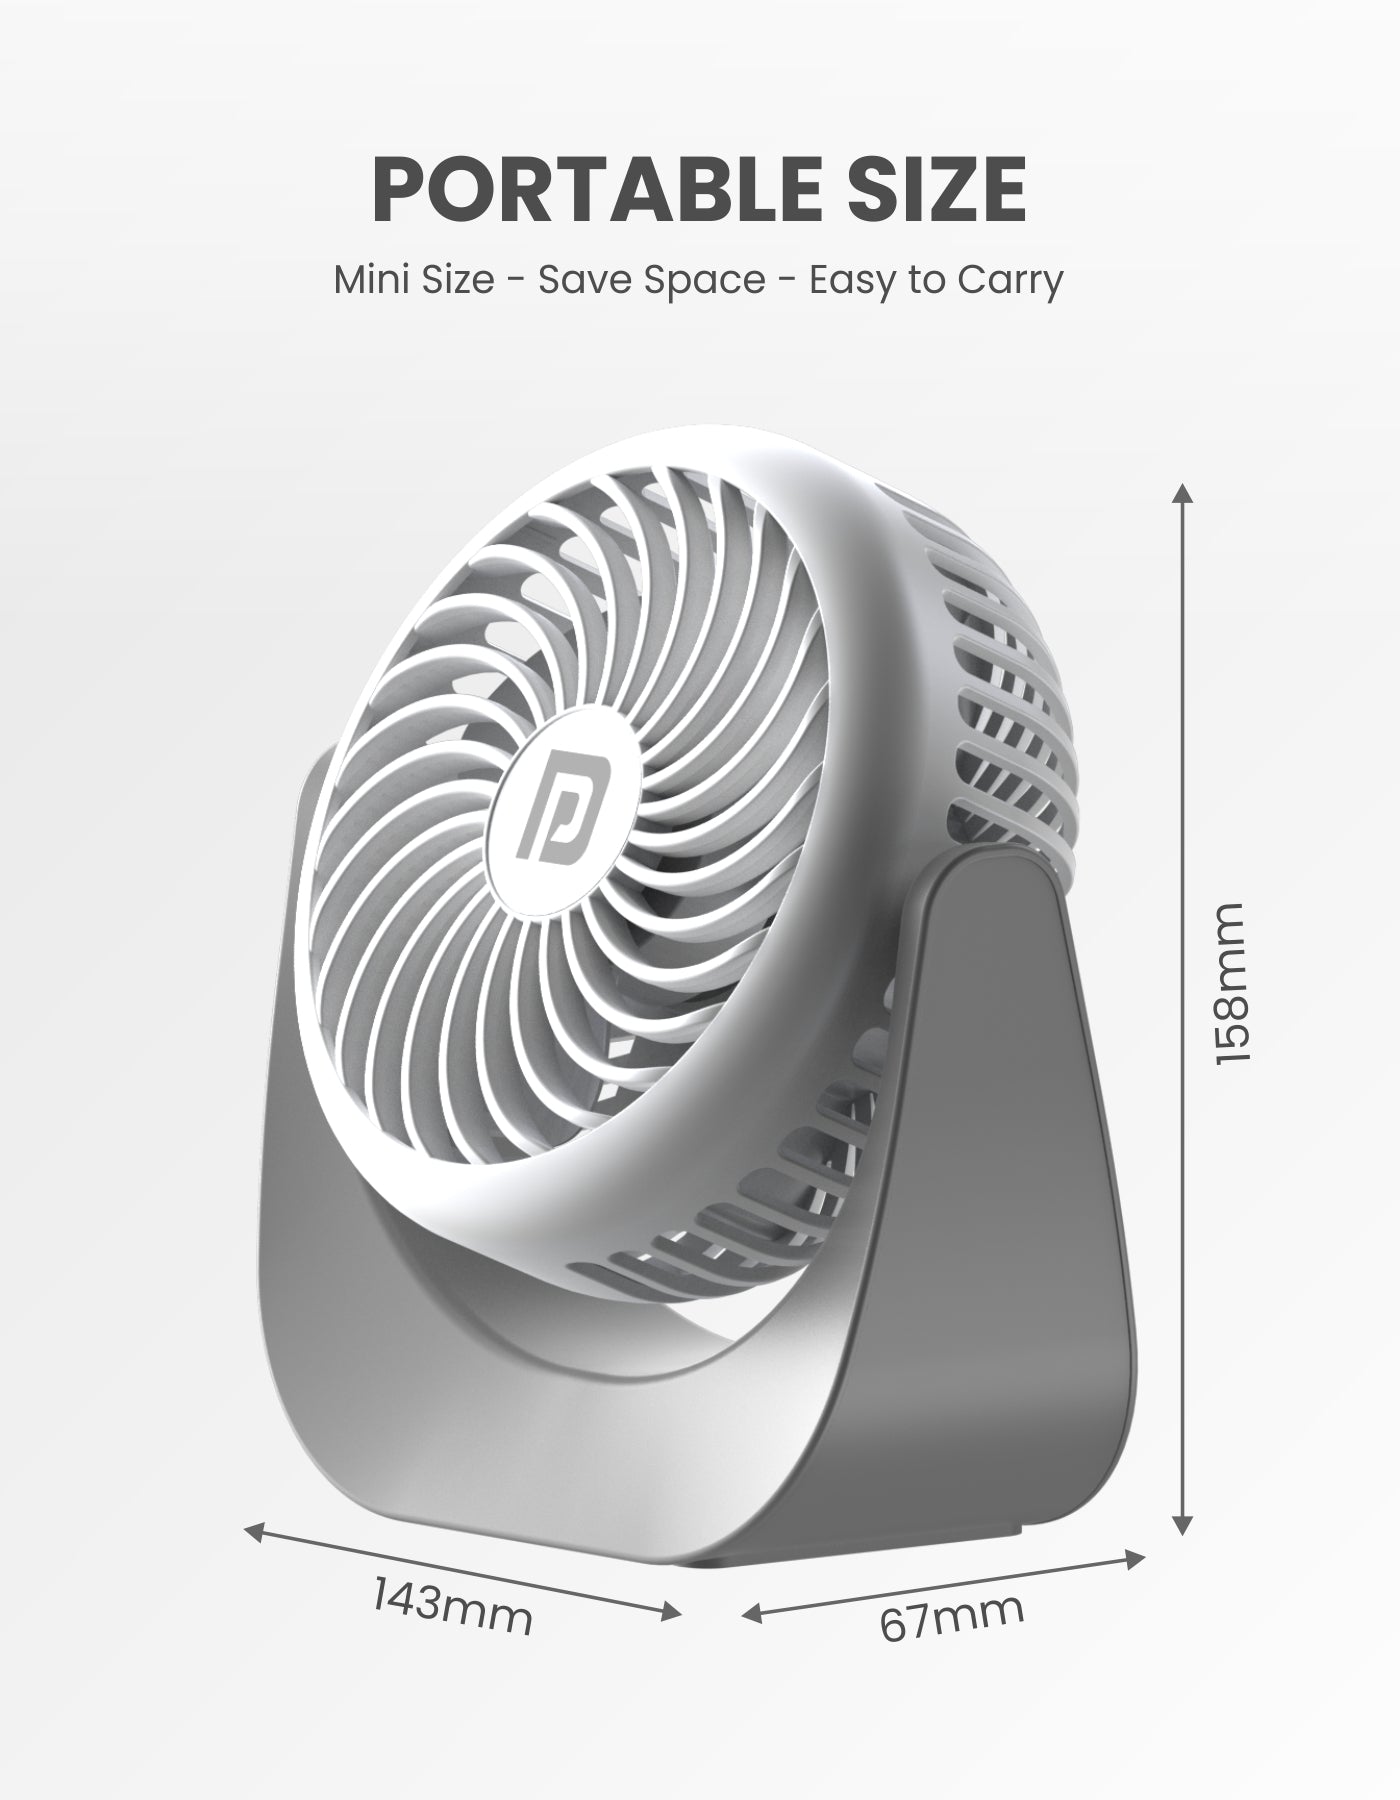 Portronics Toofan Portable Rechargeable mini Fan for Refreshing Comfort| Table desk fan| Portable table fan